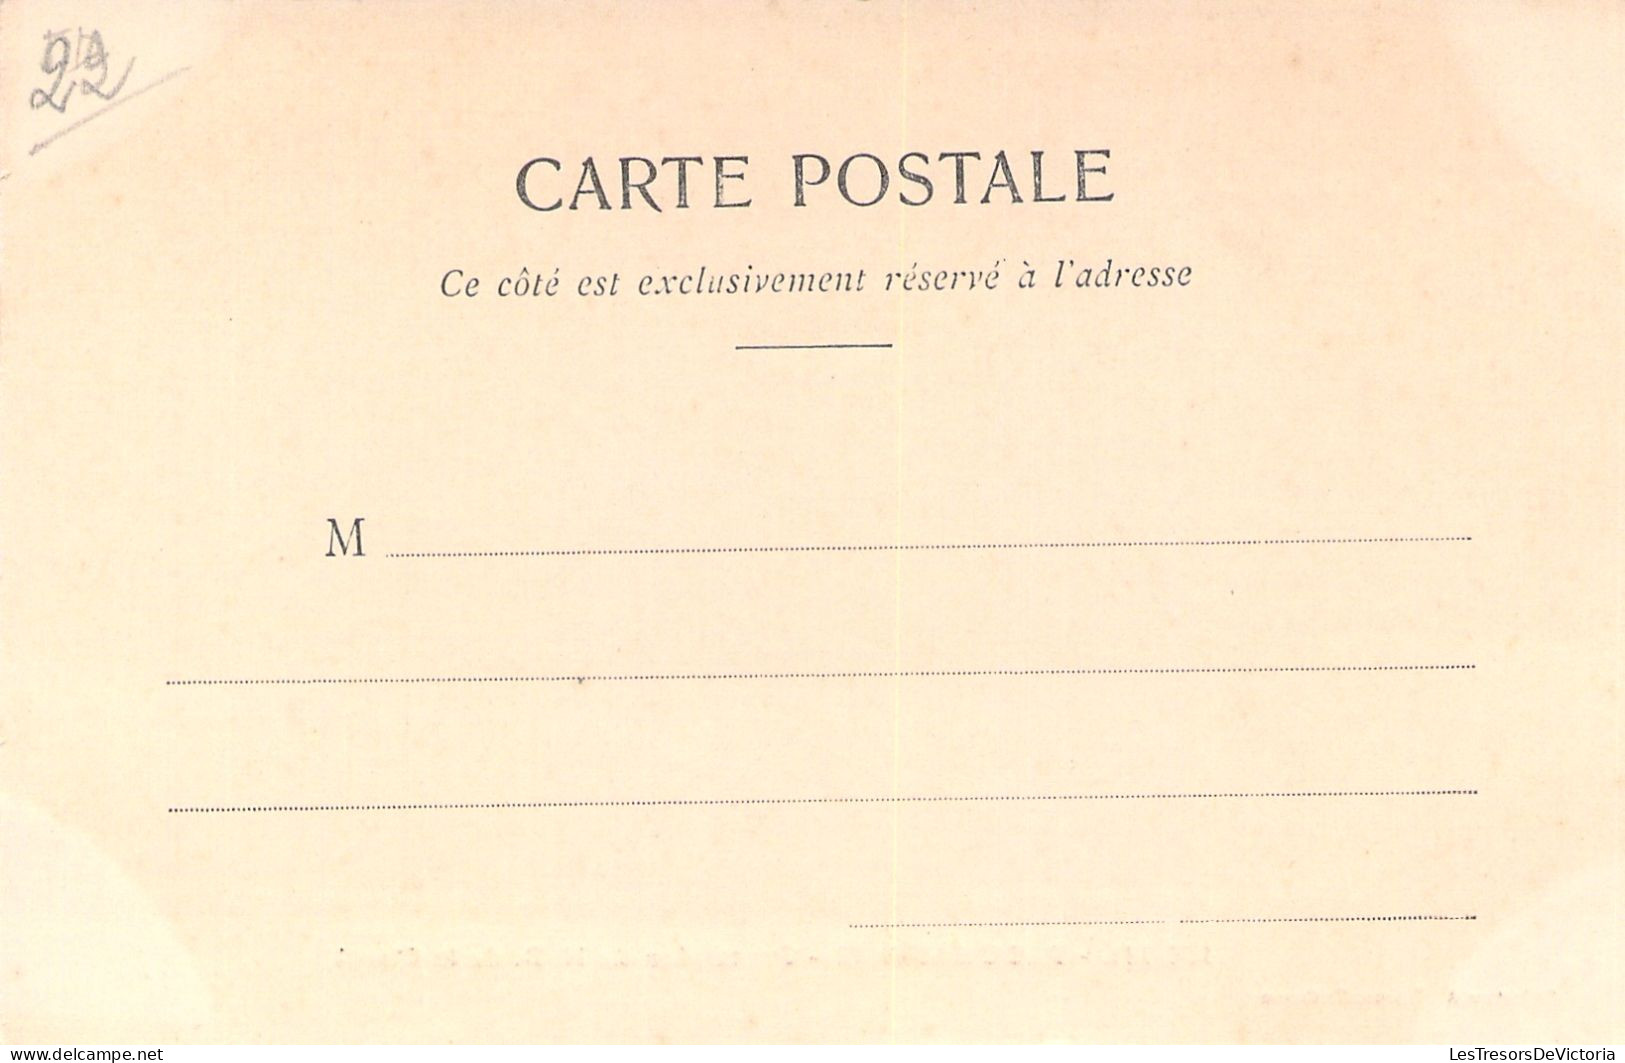 FRANCE -  Ploumanach - Procession De N D De La Clarté - Animé - Carte Postale Ancienne - Ploumanac'h